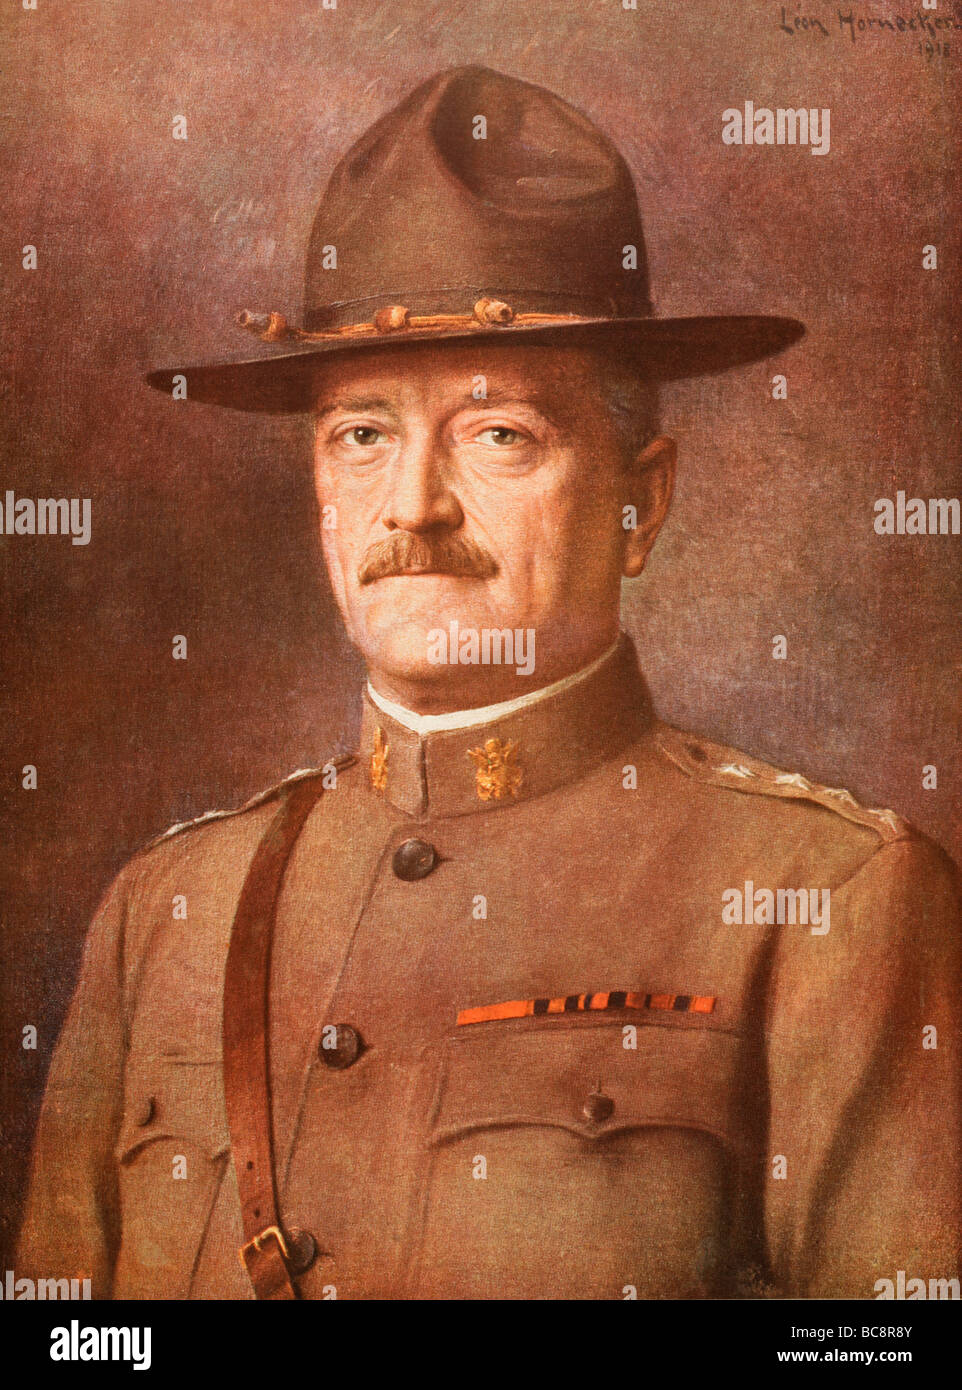 General John Joseph "Black Jack" Pershing 1860 bis 1948.   Kommandant des amerikanischen Expeditionskorps im ersten Weltkrieg. Stockfoto